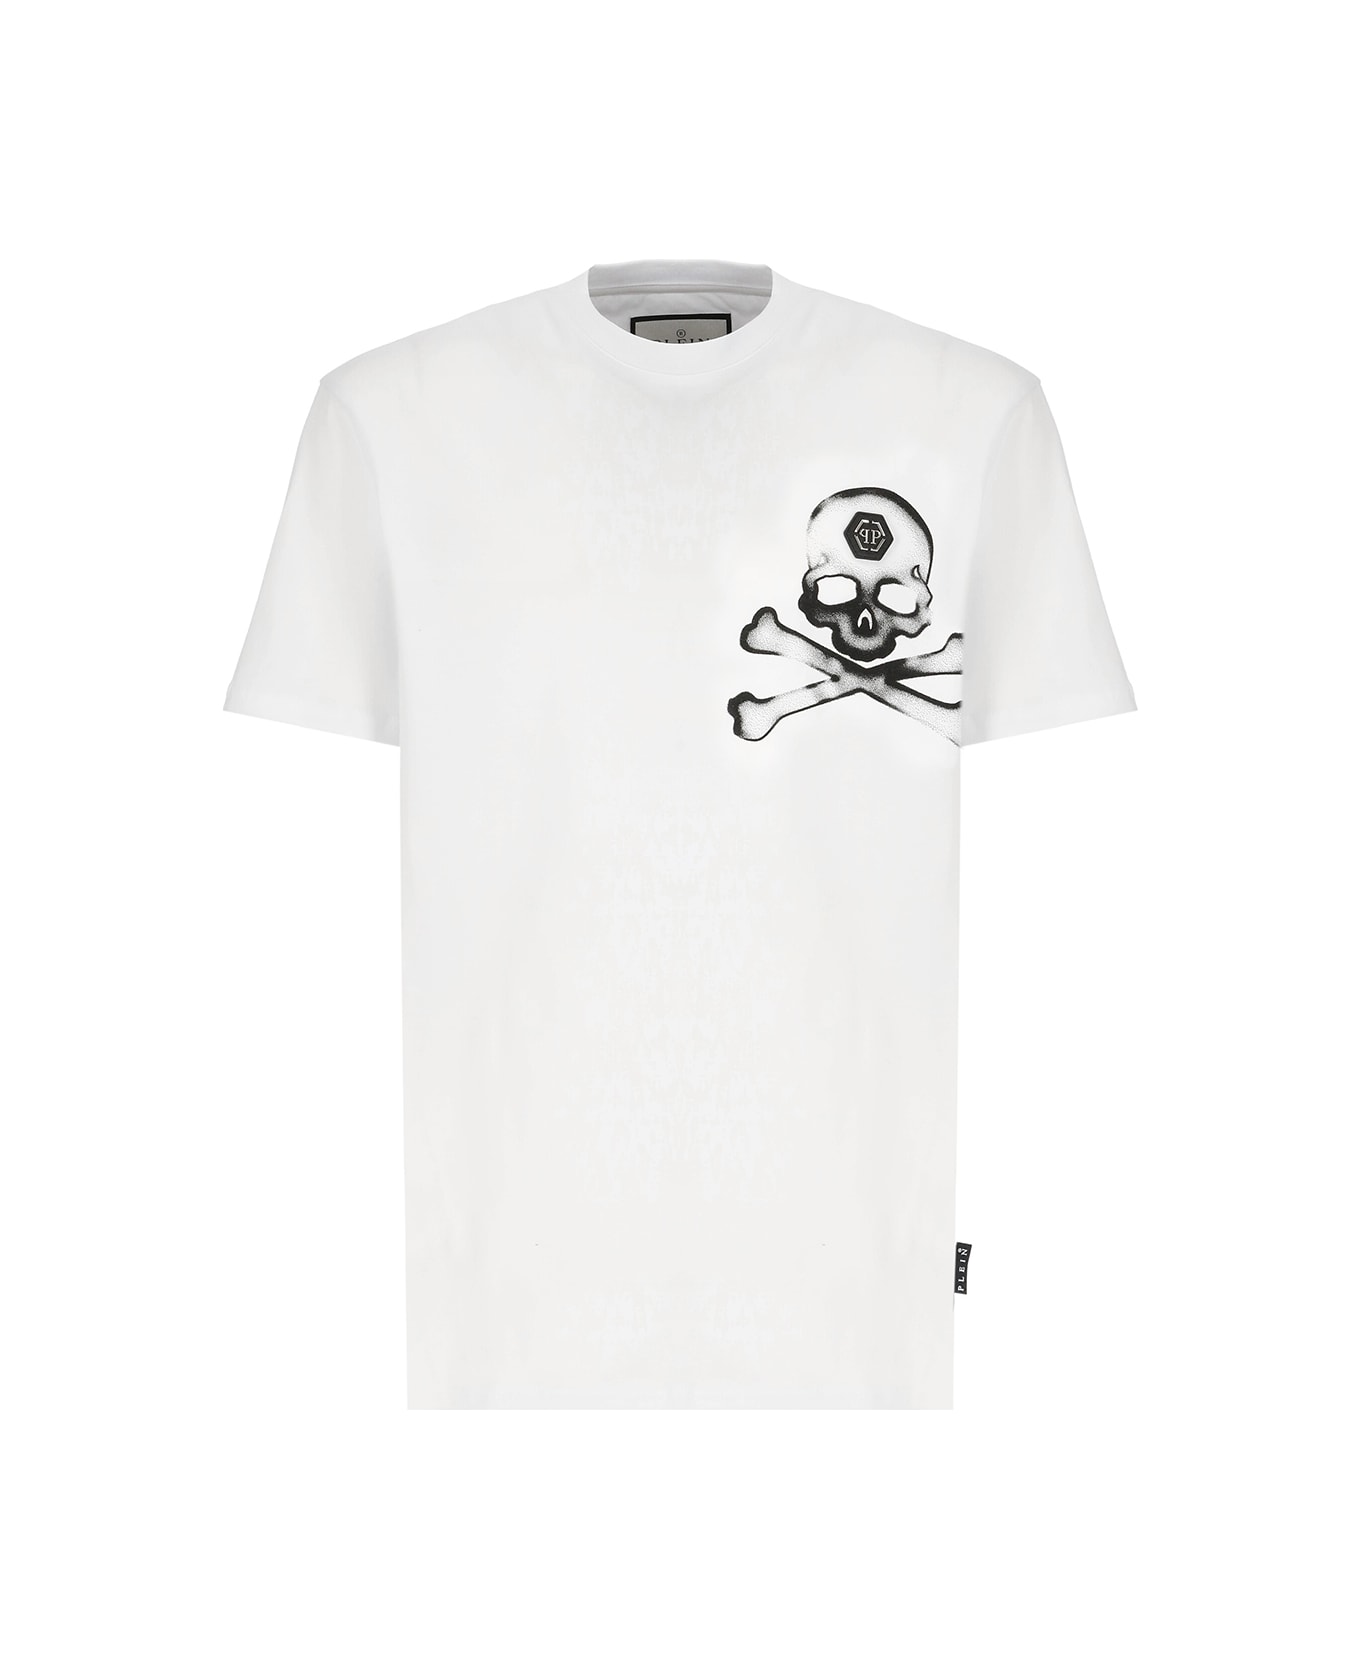 Philipp Plein Round Neck Ss Gothic Plein T-shirt シャツ